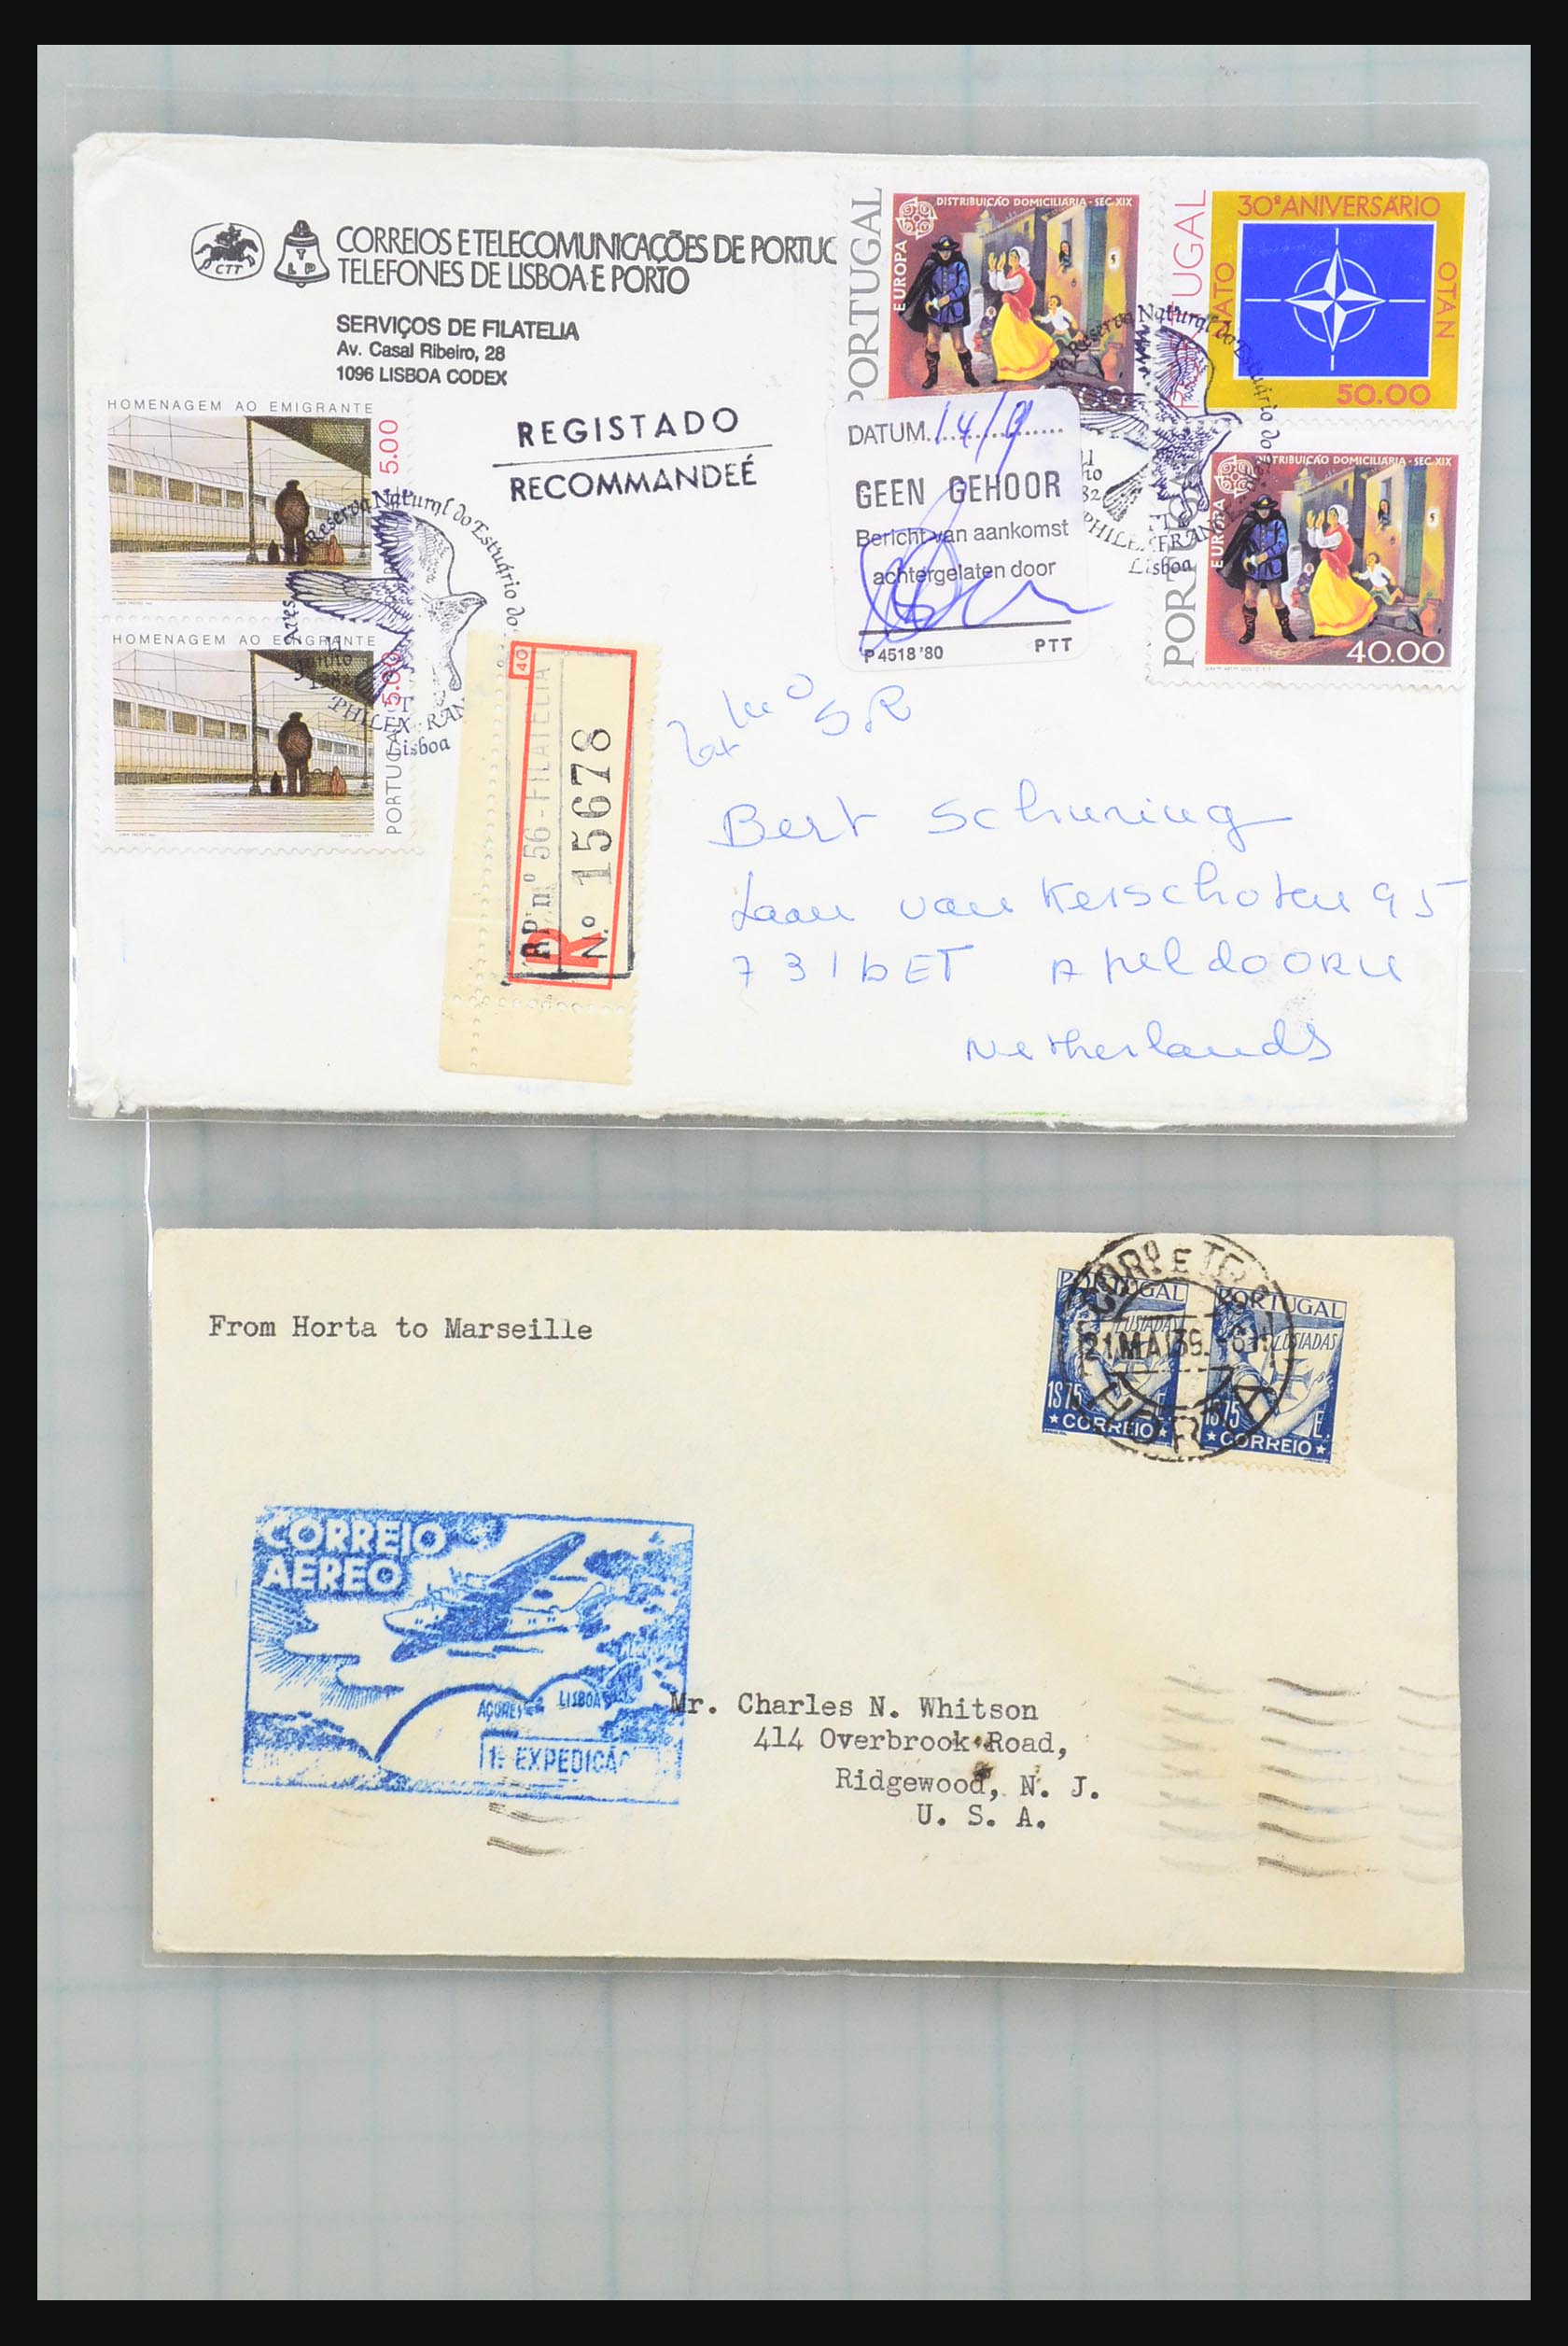 31358 221 - 31358 Portugal/Luxemburg/Griekenland brieven 1880-1960.